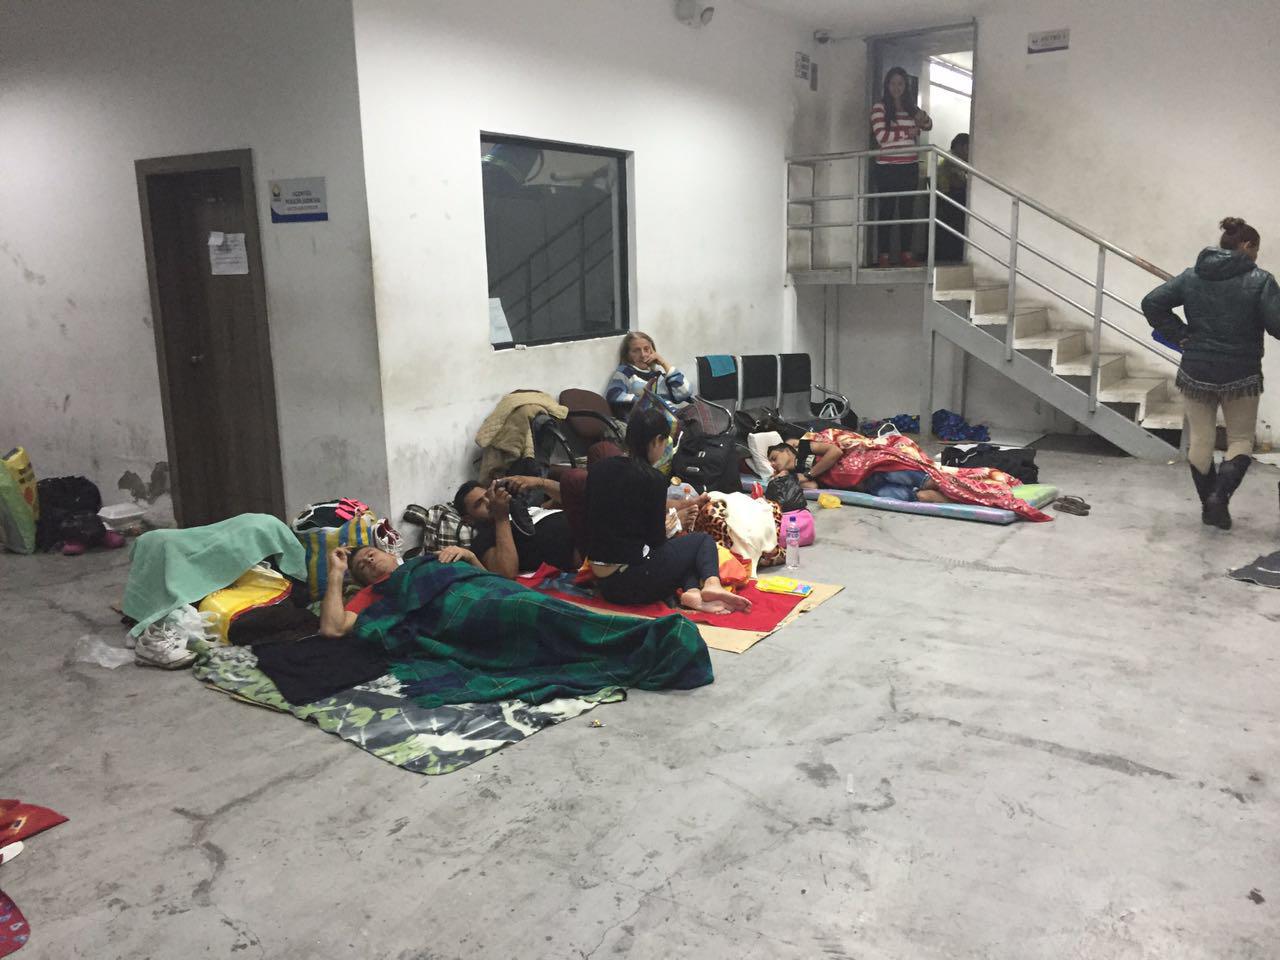 Cubanos detenidos en el calabozo de la unidad judicial de delitos flagrantes de Quito, esperando a ser deportados o liberados luego de audiencias de deportación, 9 de julio de 2016.  © 2016 Juan Pablo Alban